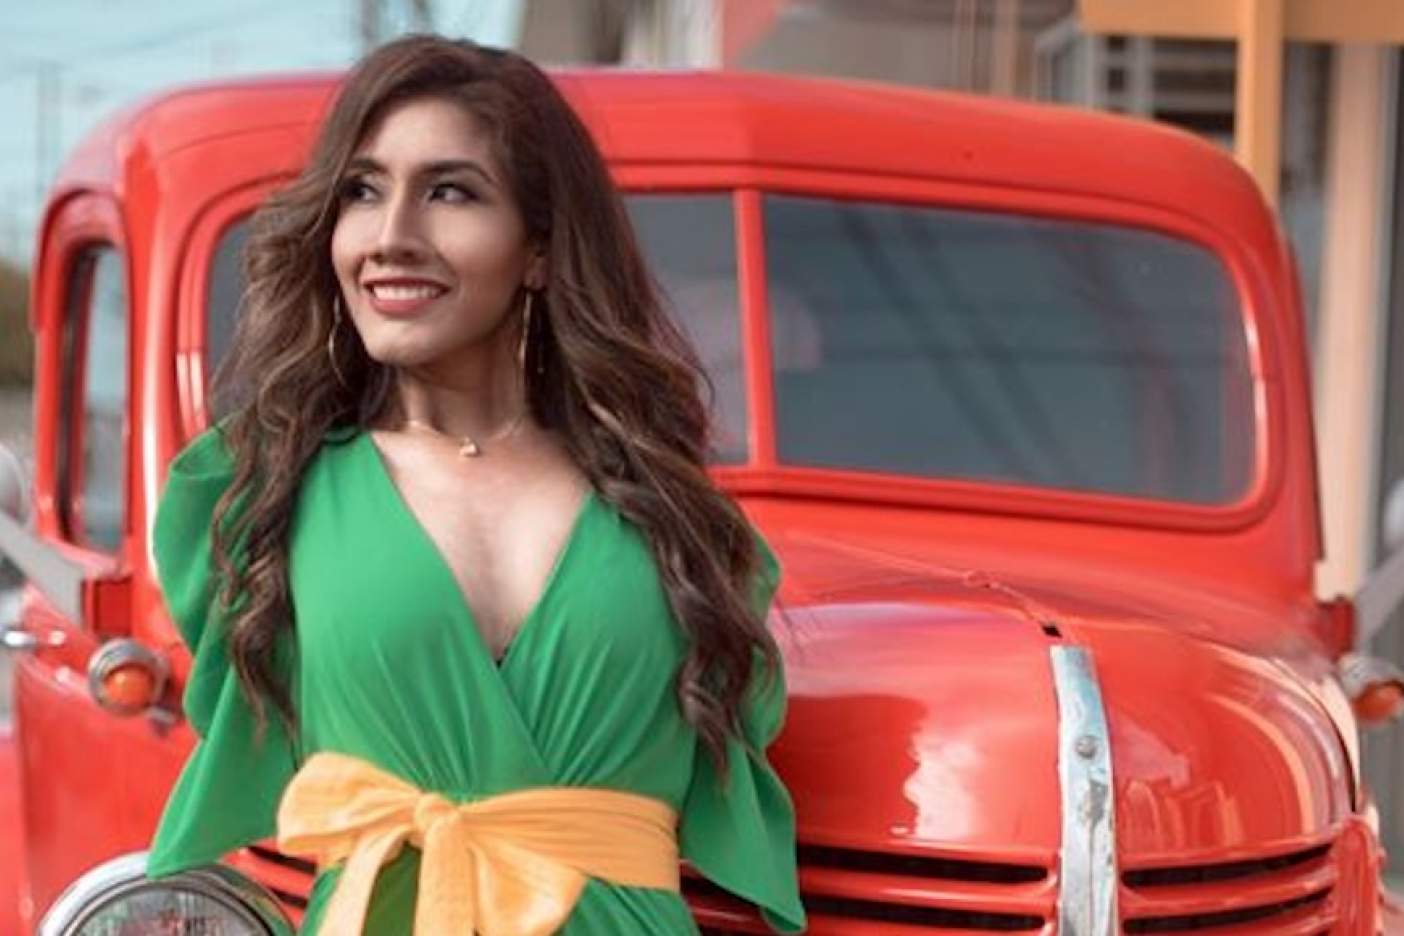 Une miss mexicaine née sans bras défie les codes traditionnels de la beauté